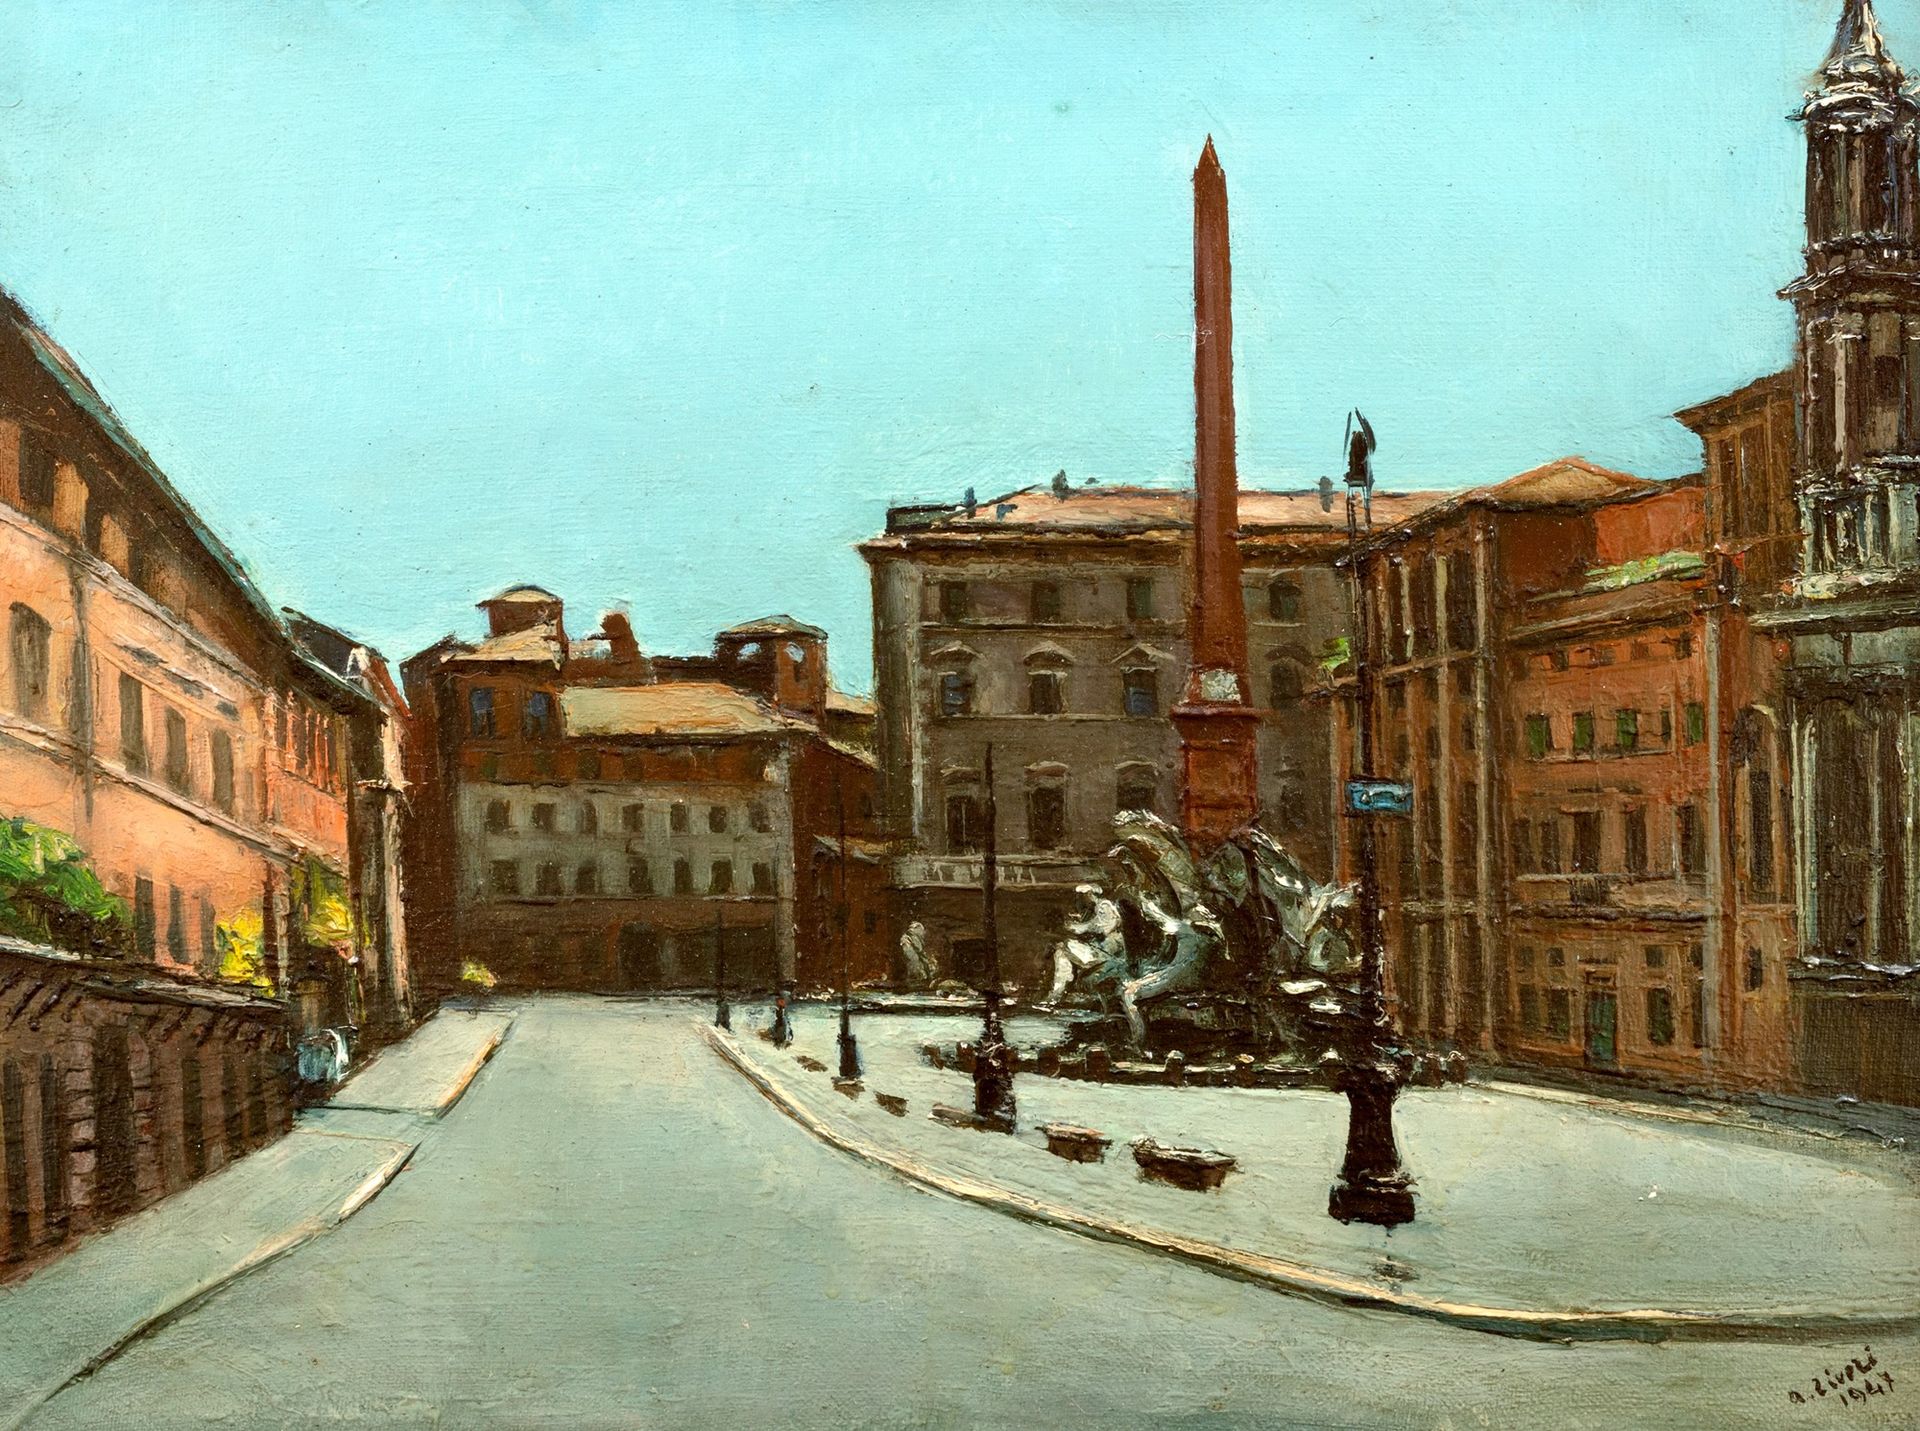 ALBERTO ZIVERI Piazza Navona, 1947

óleo sobre lienzo
50 x 60 cm
Firmado abajo a&hellip;